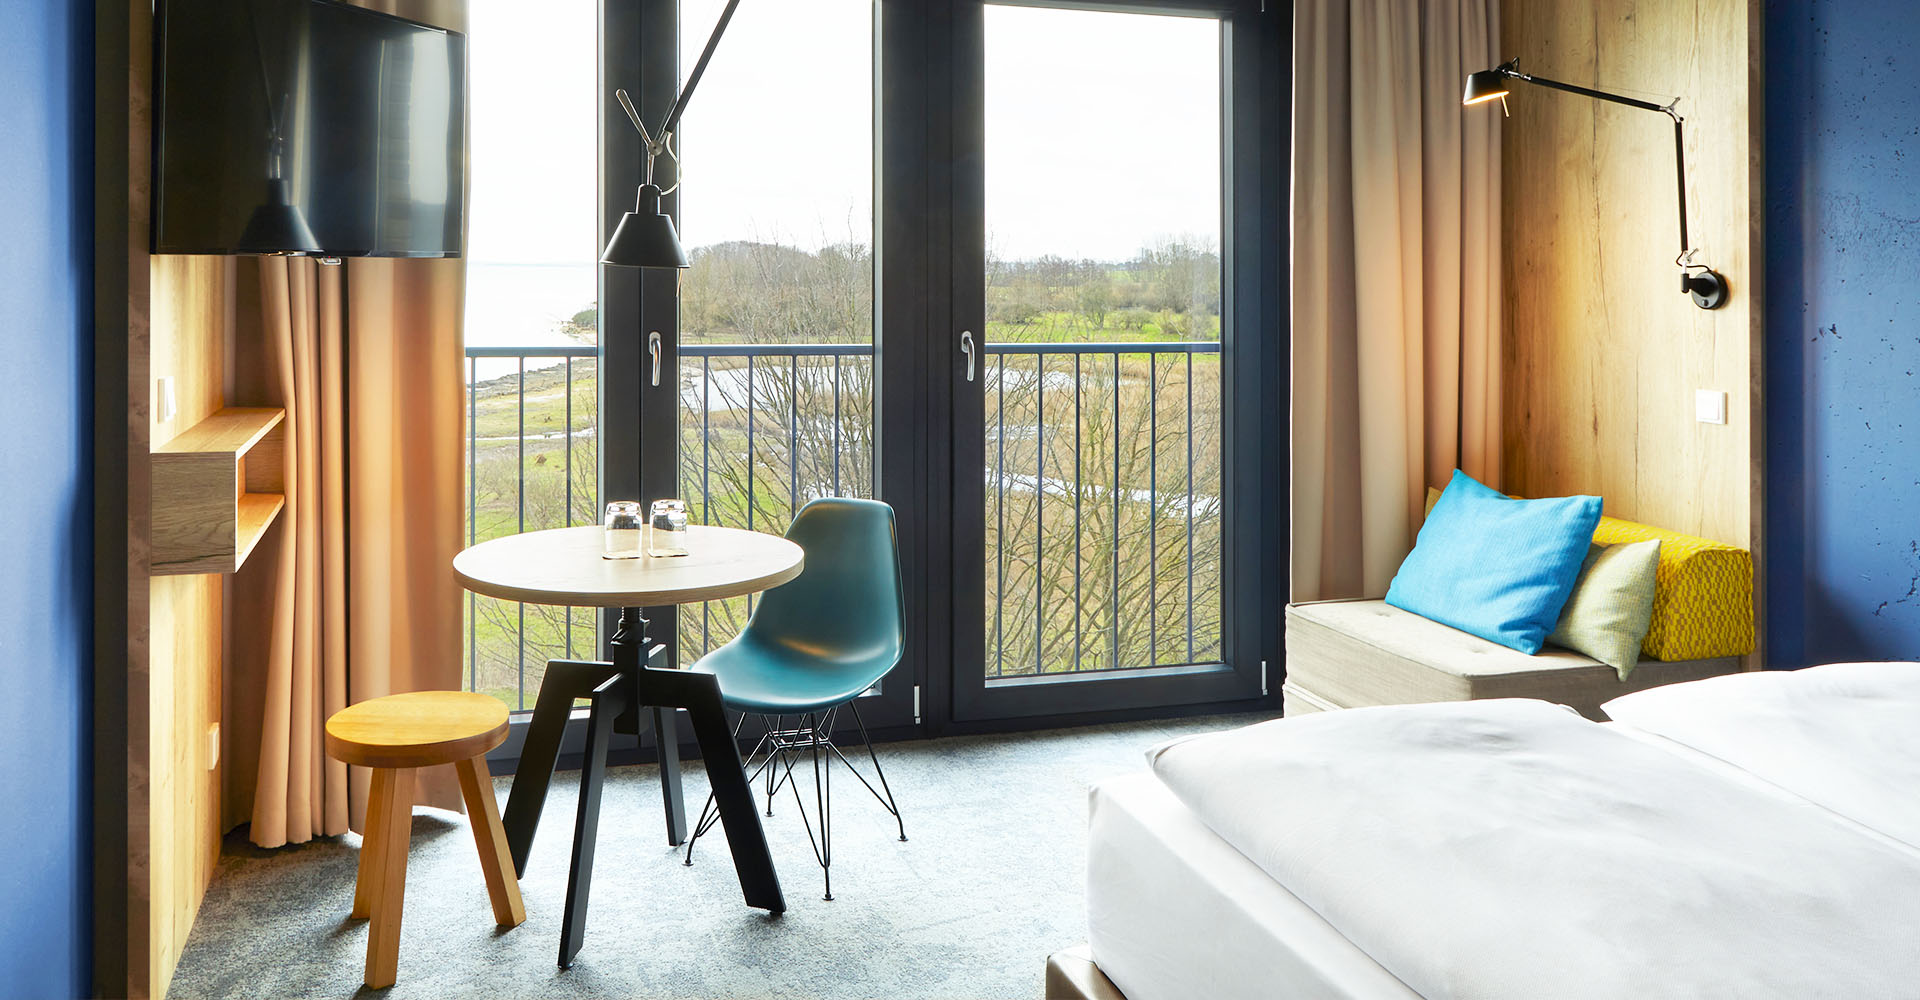 Doppelzimmer im arborea Marina Resort Neustadt , mit einem gemütlichen Kingsize Doppelbett, einem Sessel, einem kleinen Esstisch mit Stuhl und Hocker, einem TV und großen Fenstern mit Landblick.